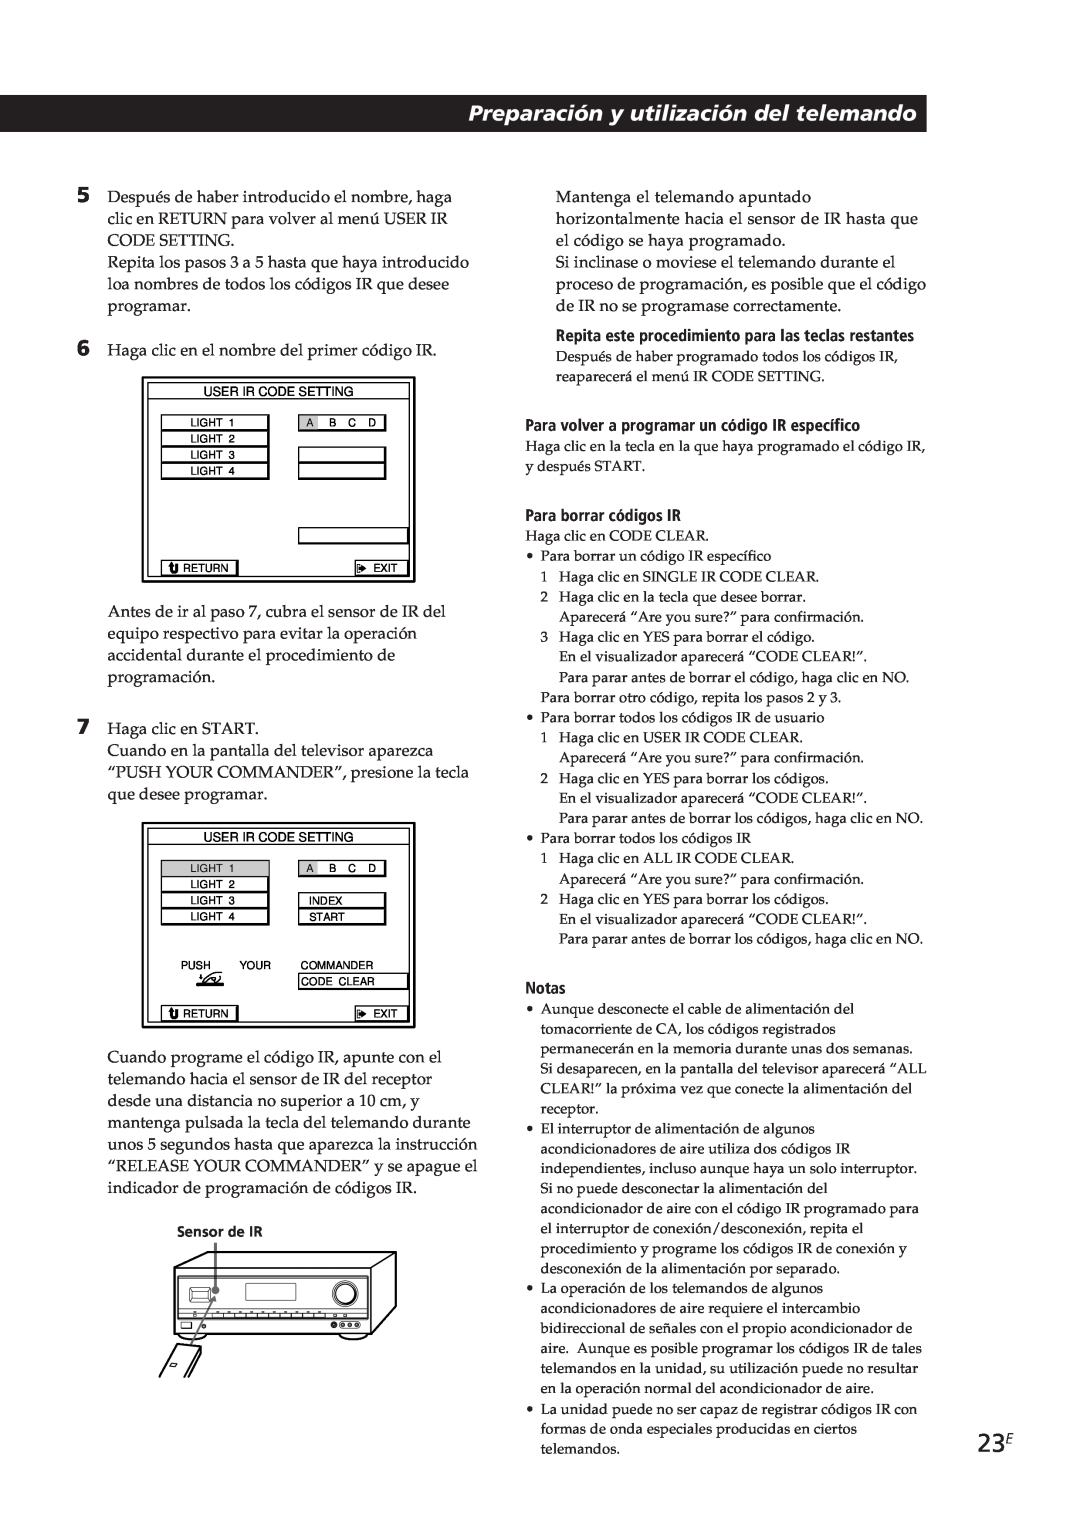 Sony STR-DE805G manual Preparación y utilización del telemando, Para volver a programar un código IR específico, Notas 